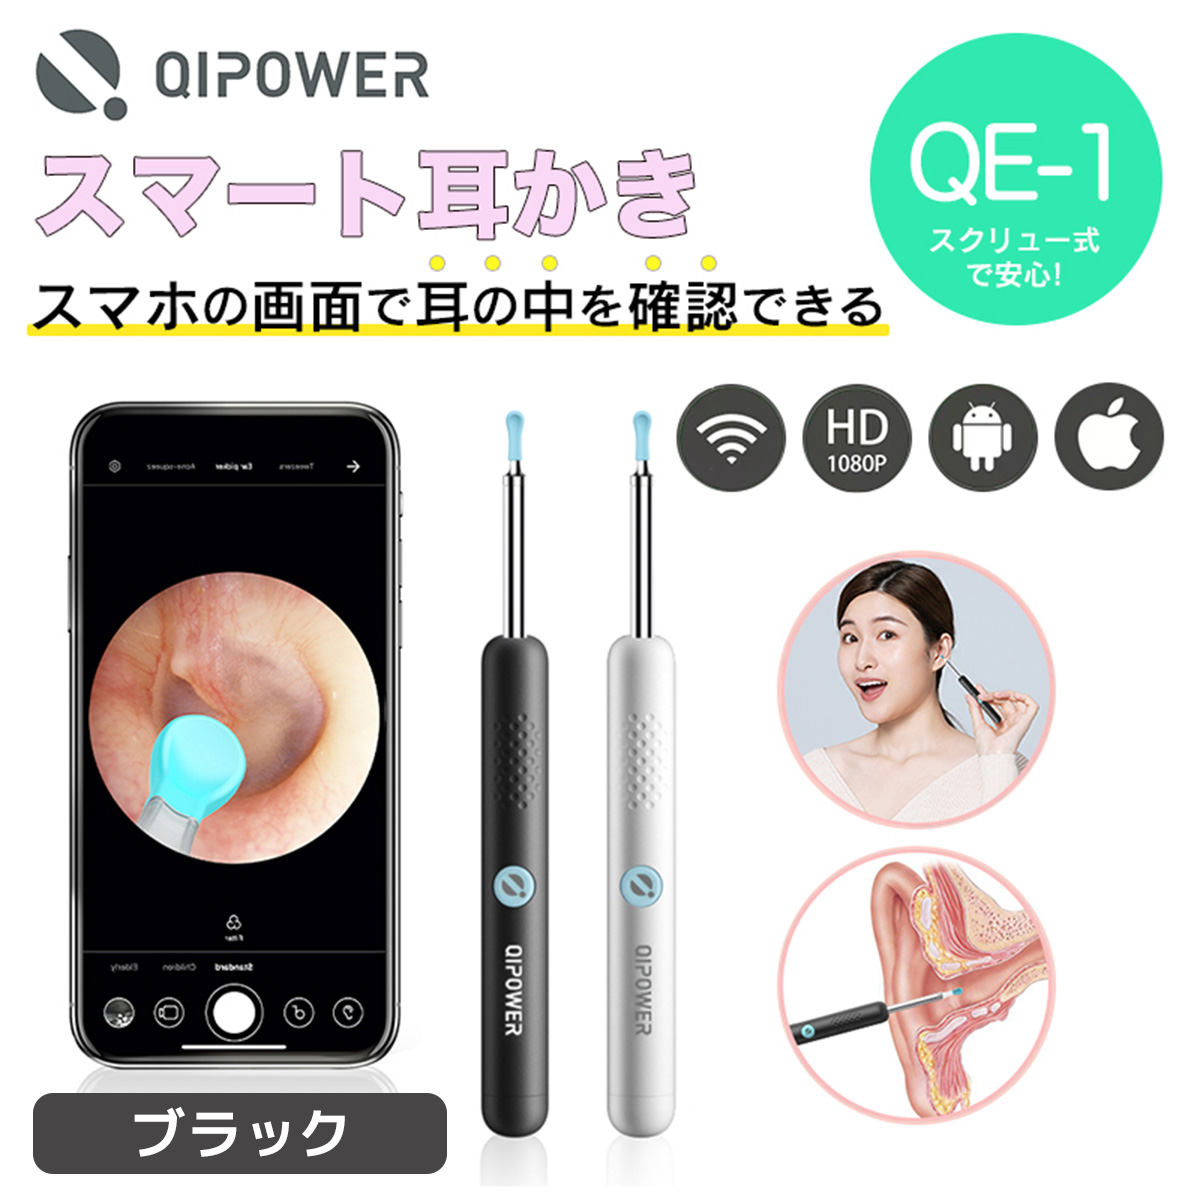 【在庫品/即納】QiPower スマート耳かき QE-1 ブラック